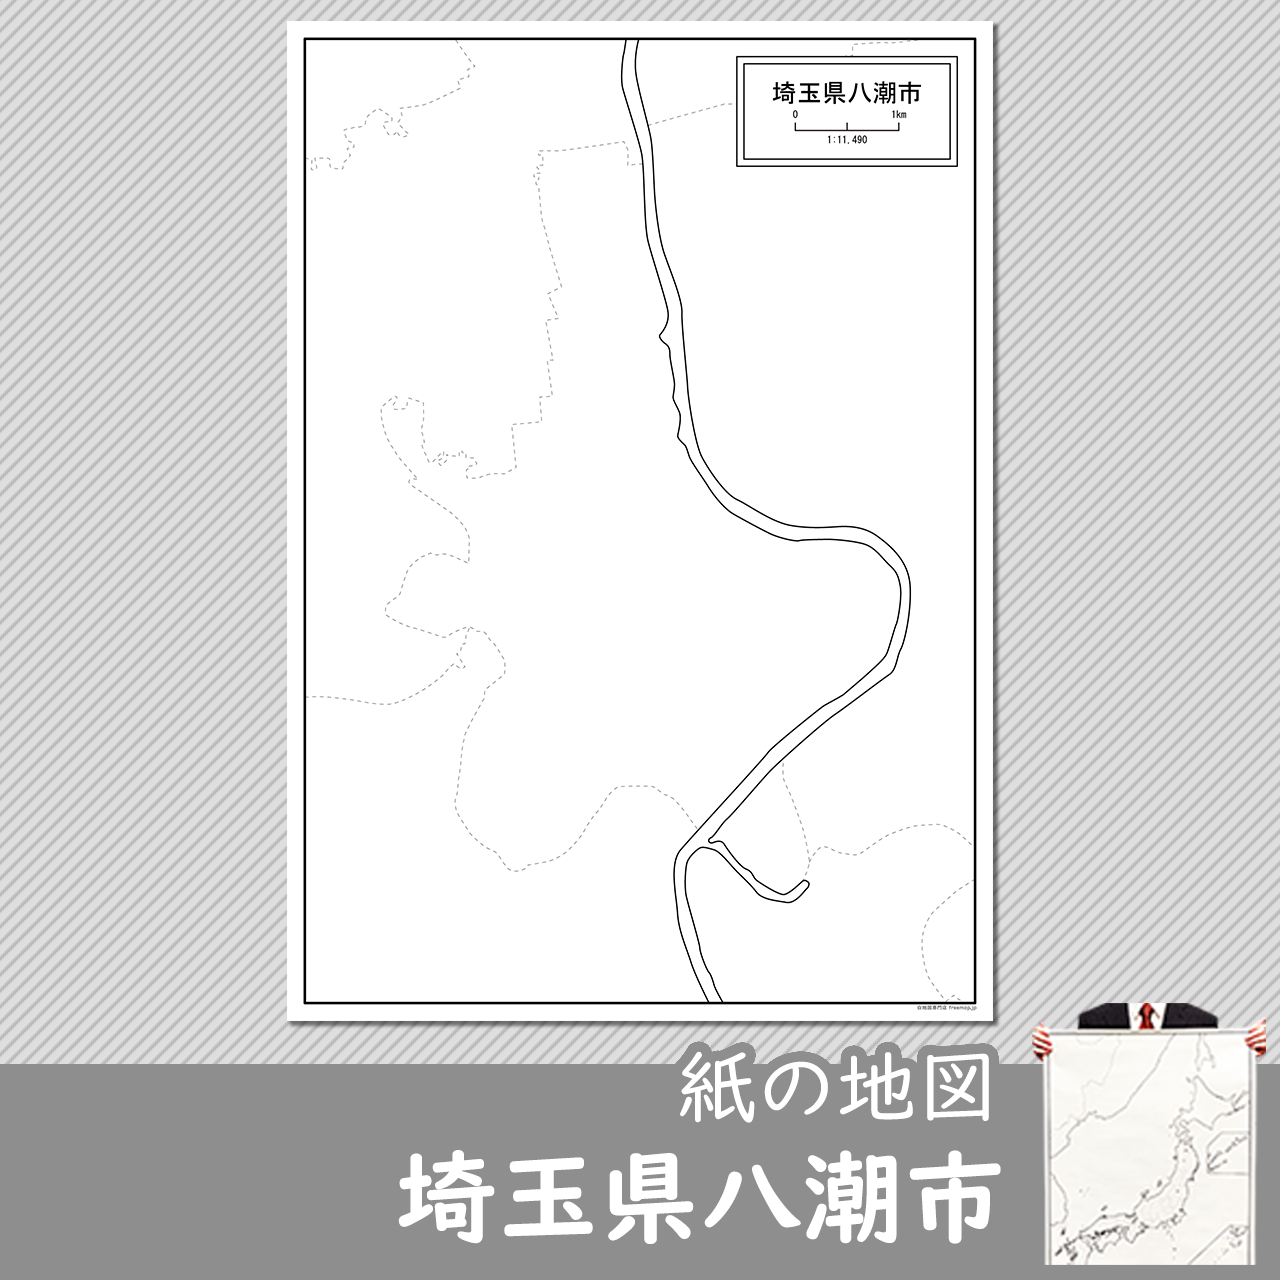 埼玉県八潮市の紙の白地図